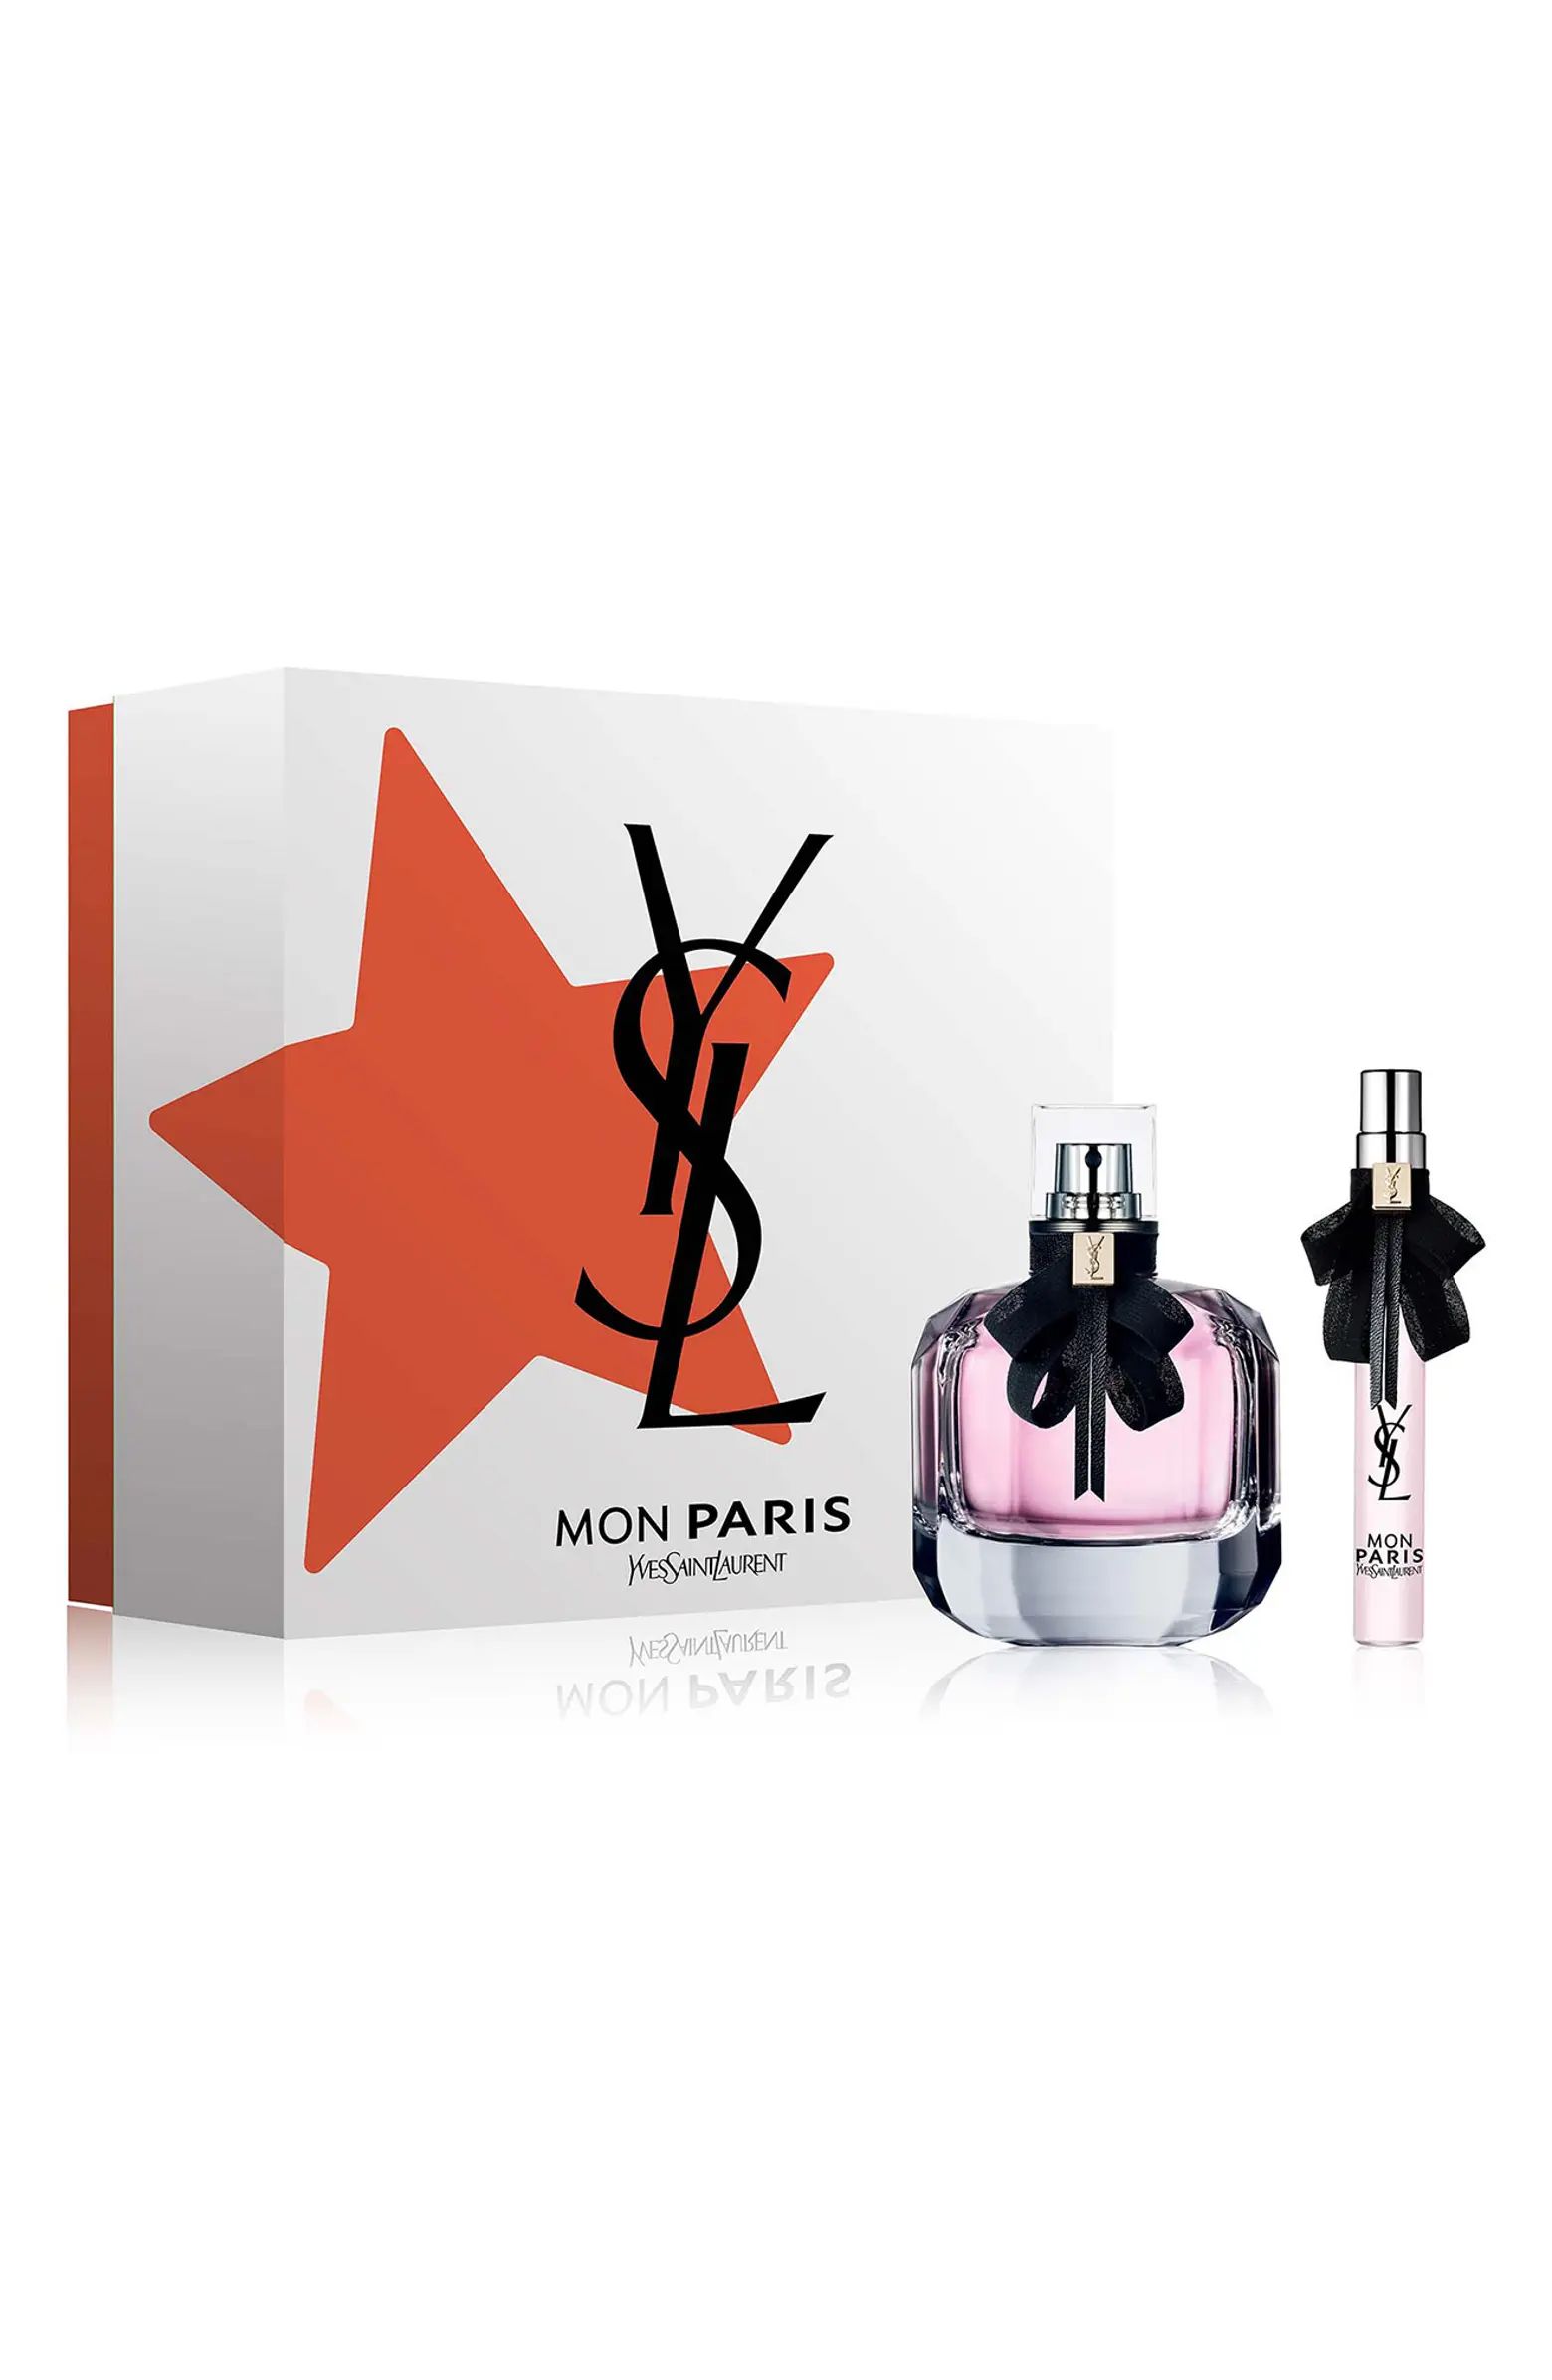 Yves Saint Laurent Mon Paris Eau de Parfum Set $160 Value | Nordstrom | Nordstrom